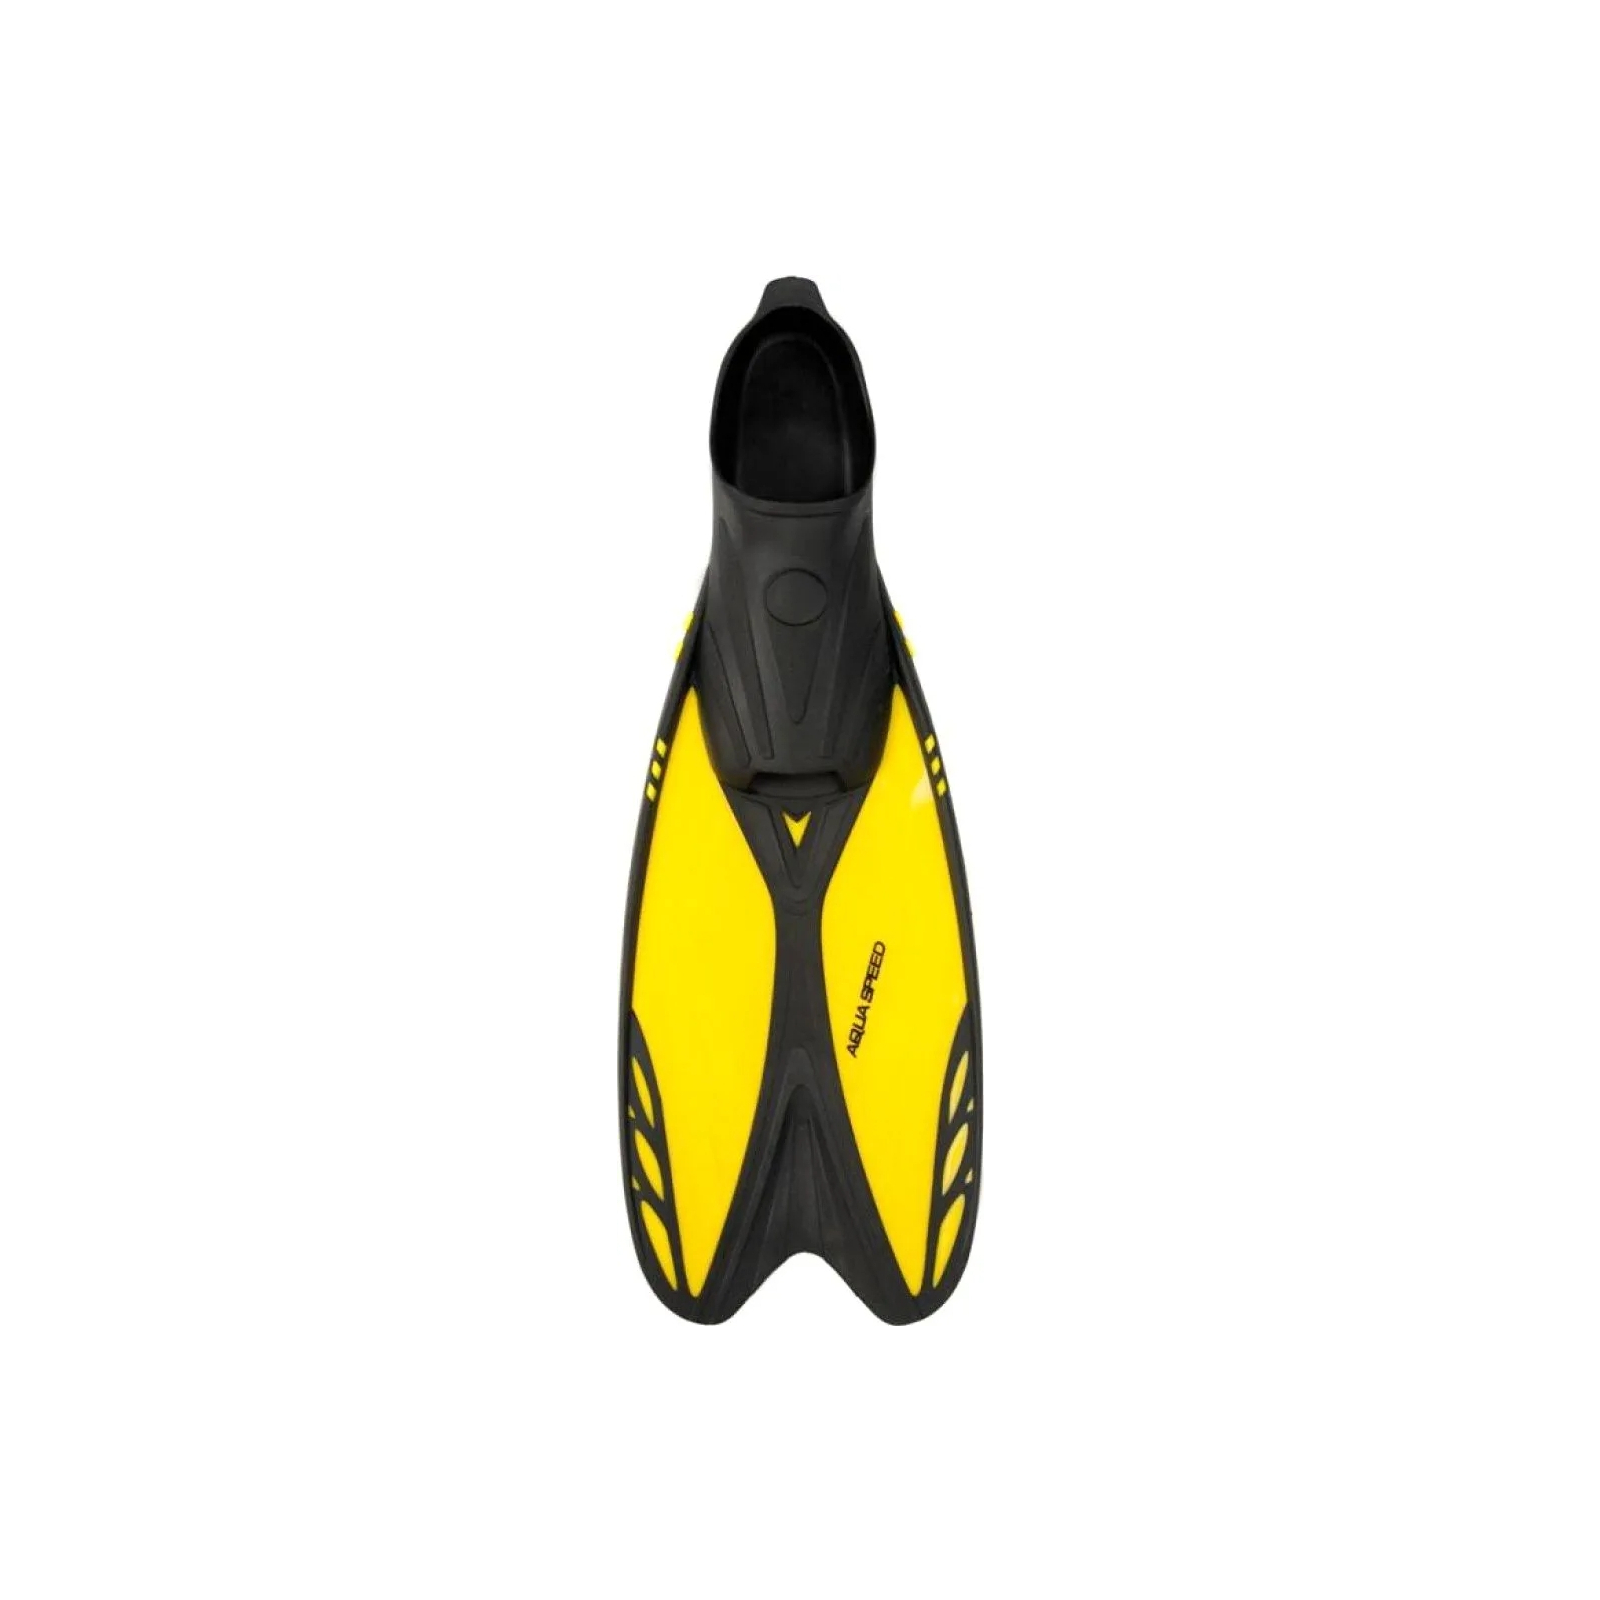 Ласты Aqua Speed Vapor 724-38 60270 жовтий, чорний 36-37 (5905718602704) изображение 2